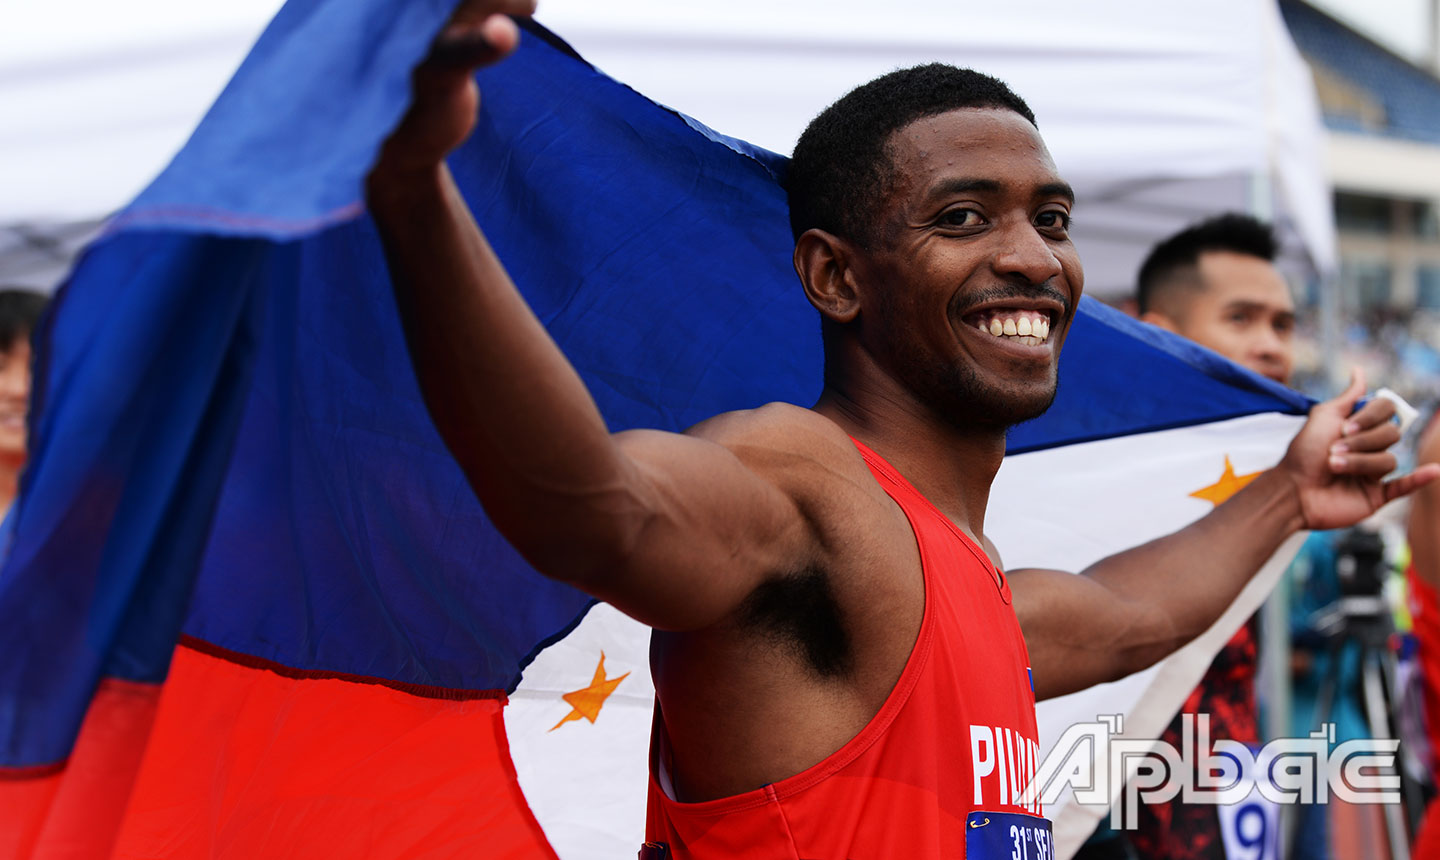 Nụ cười hạnh phúc của VĐV Philippines sau khi giành chiến thắng ở nội dung 100 m vượt rào.